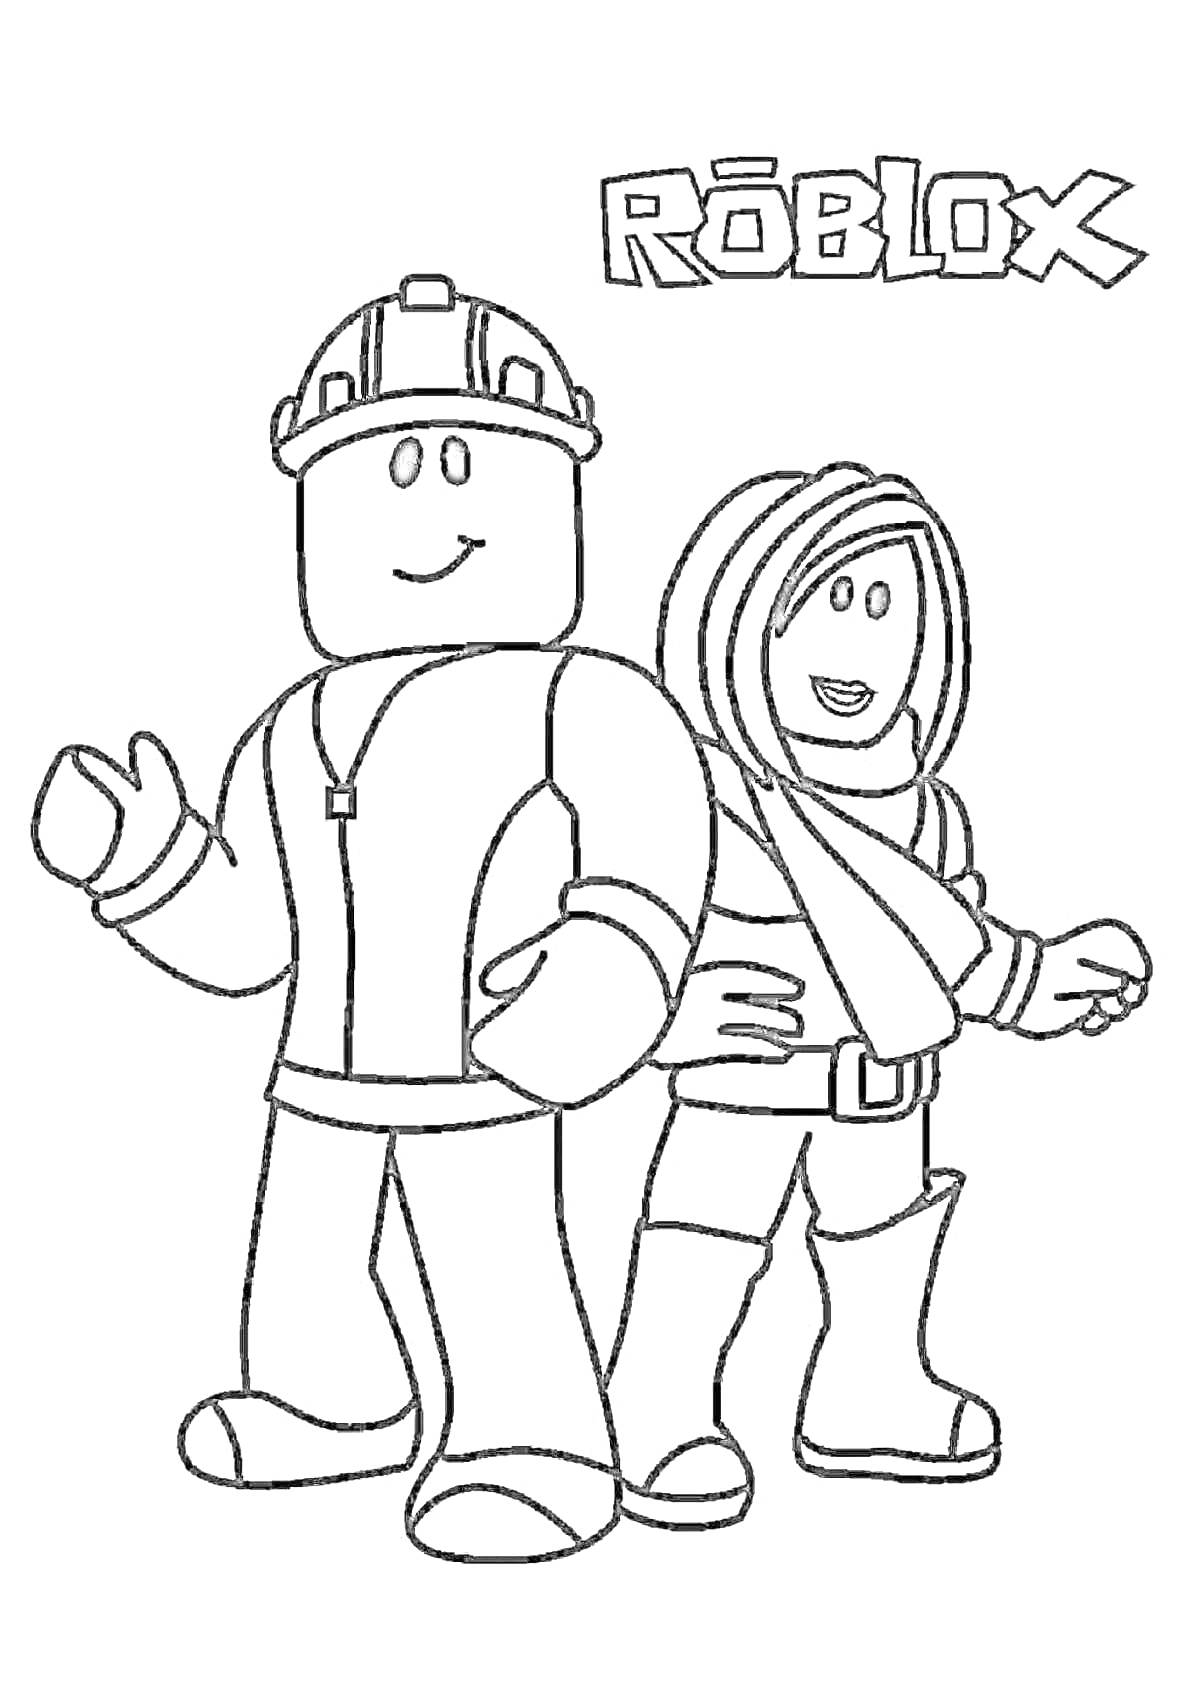 Раскраска Роблоксовые персонажи - персонаж в каске и персонаж с длинными волосами